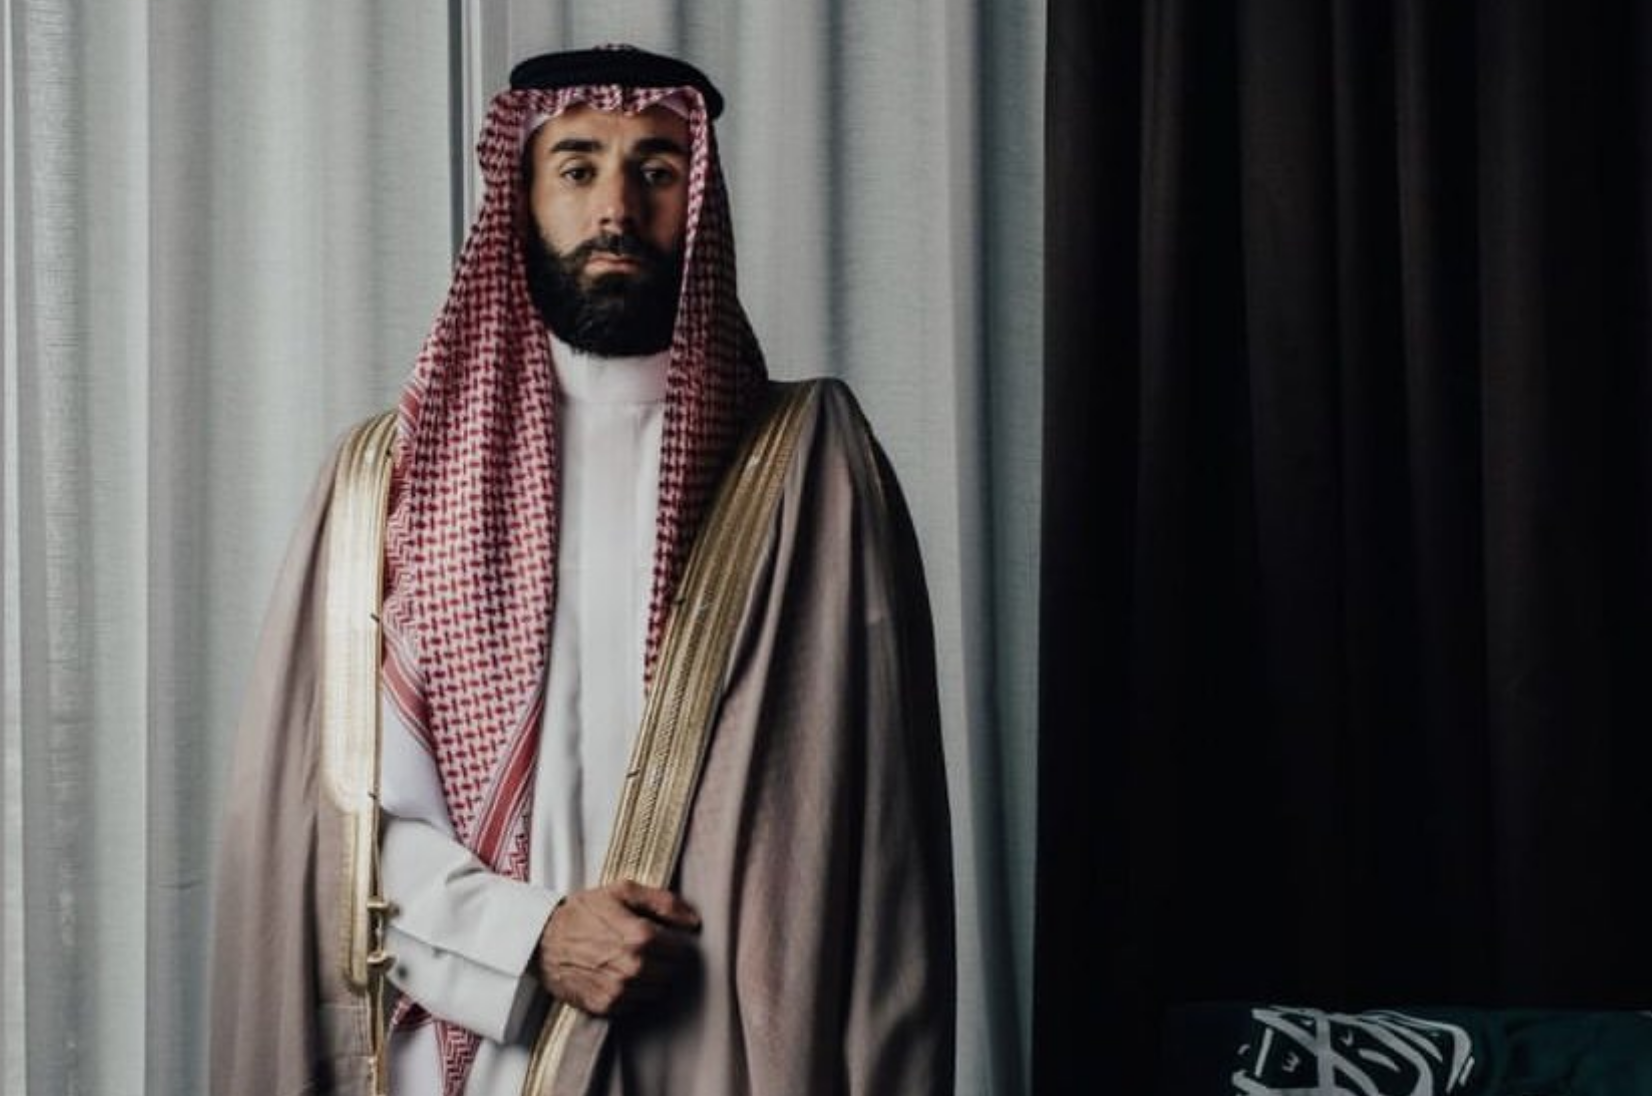 Pour la fête nationale saoudienne, Karim Benzema porte un bisht beige, sorte de manteau très fin, que l’homme saoudien porte sur le qamis lors des grandes occasions comme les mariages ou les fêtes religieuses, orné de broderies dorées (Twitter/@Benzema)